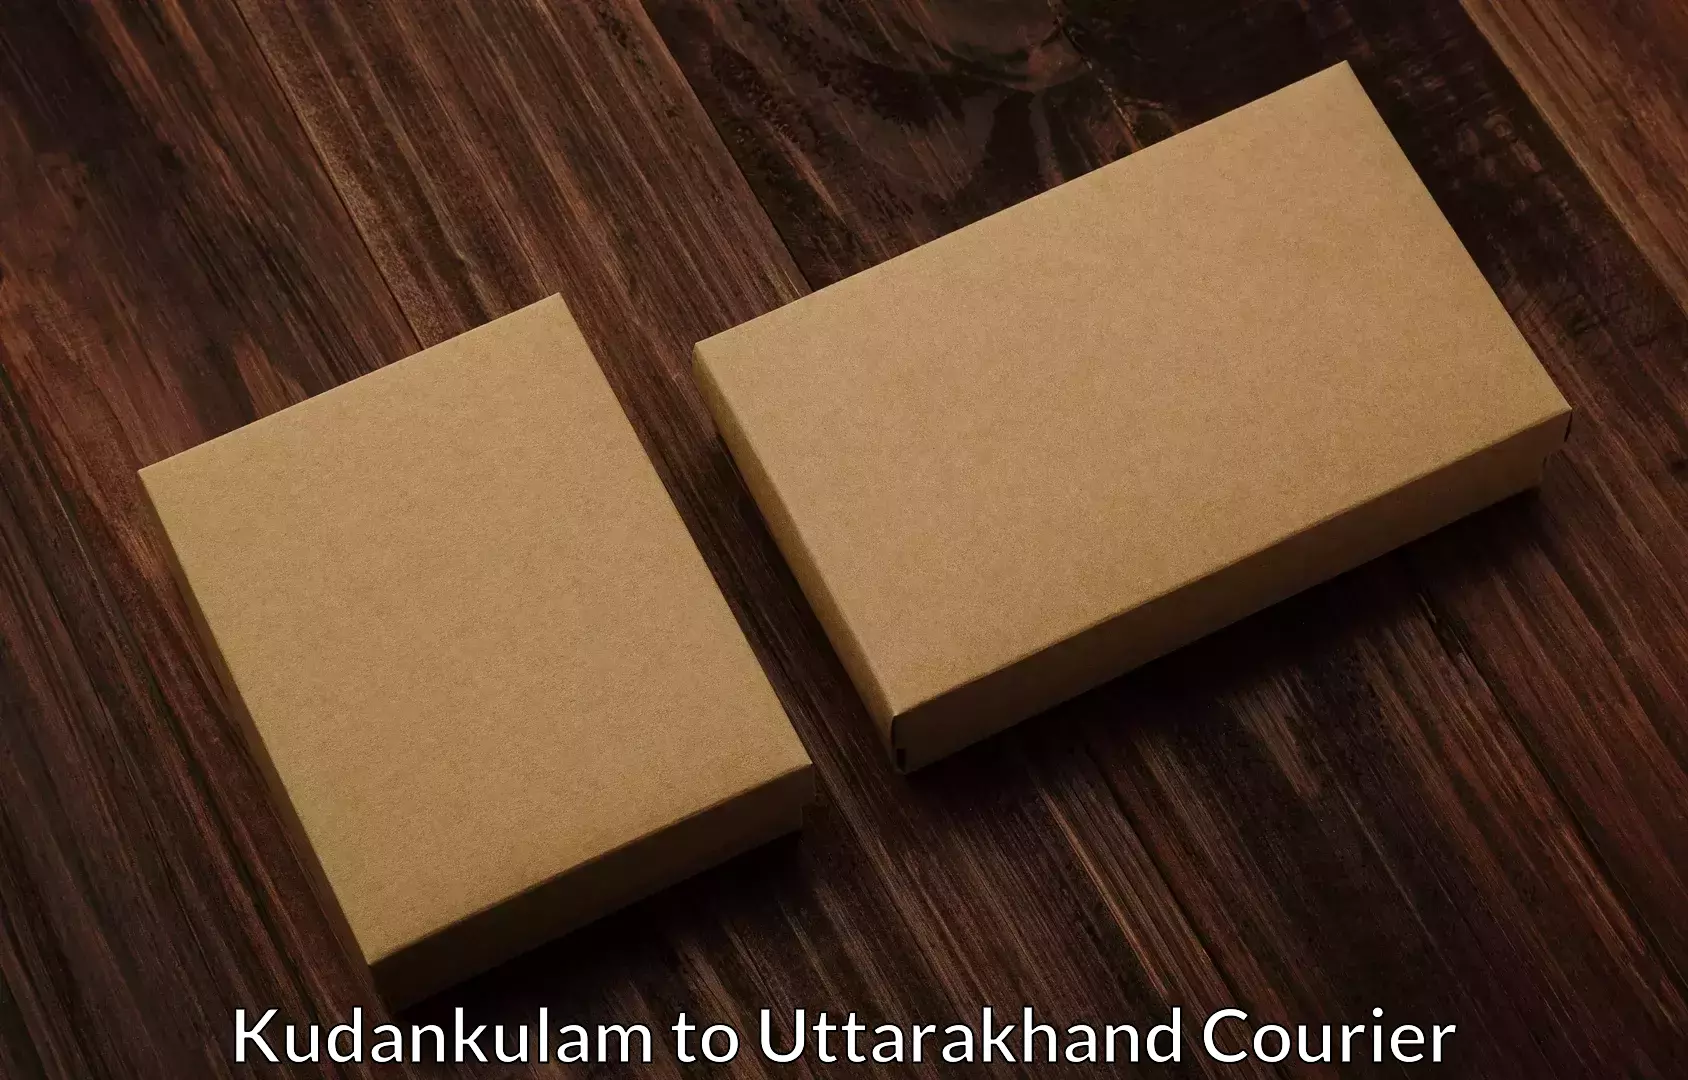 Trusted relocation services Kudankulam to Uttarakhand